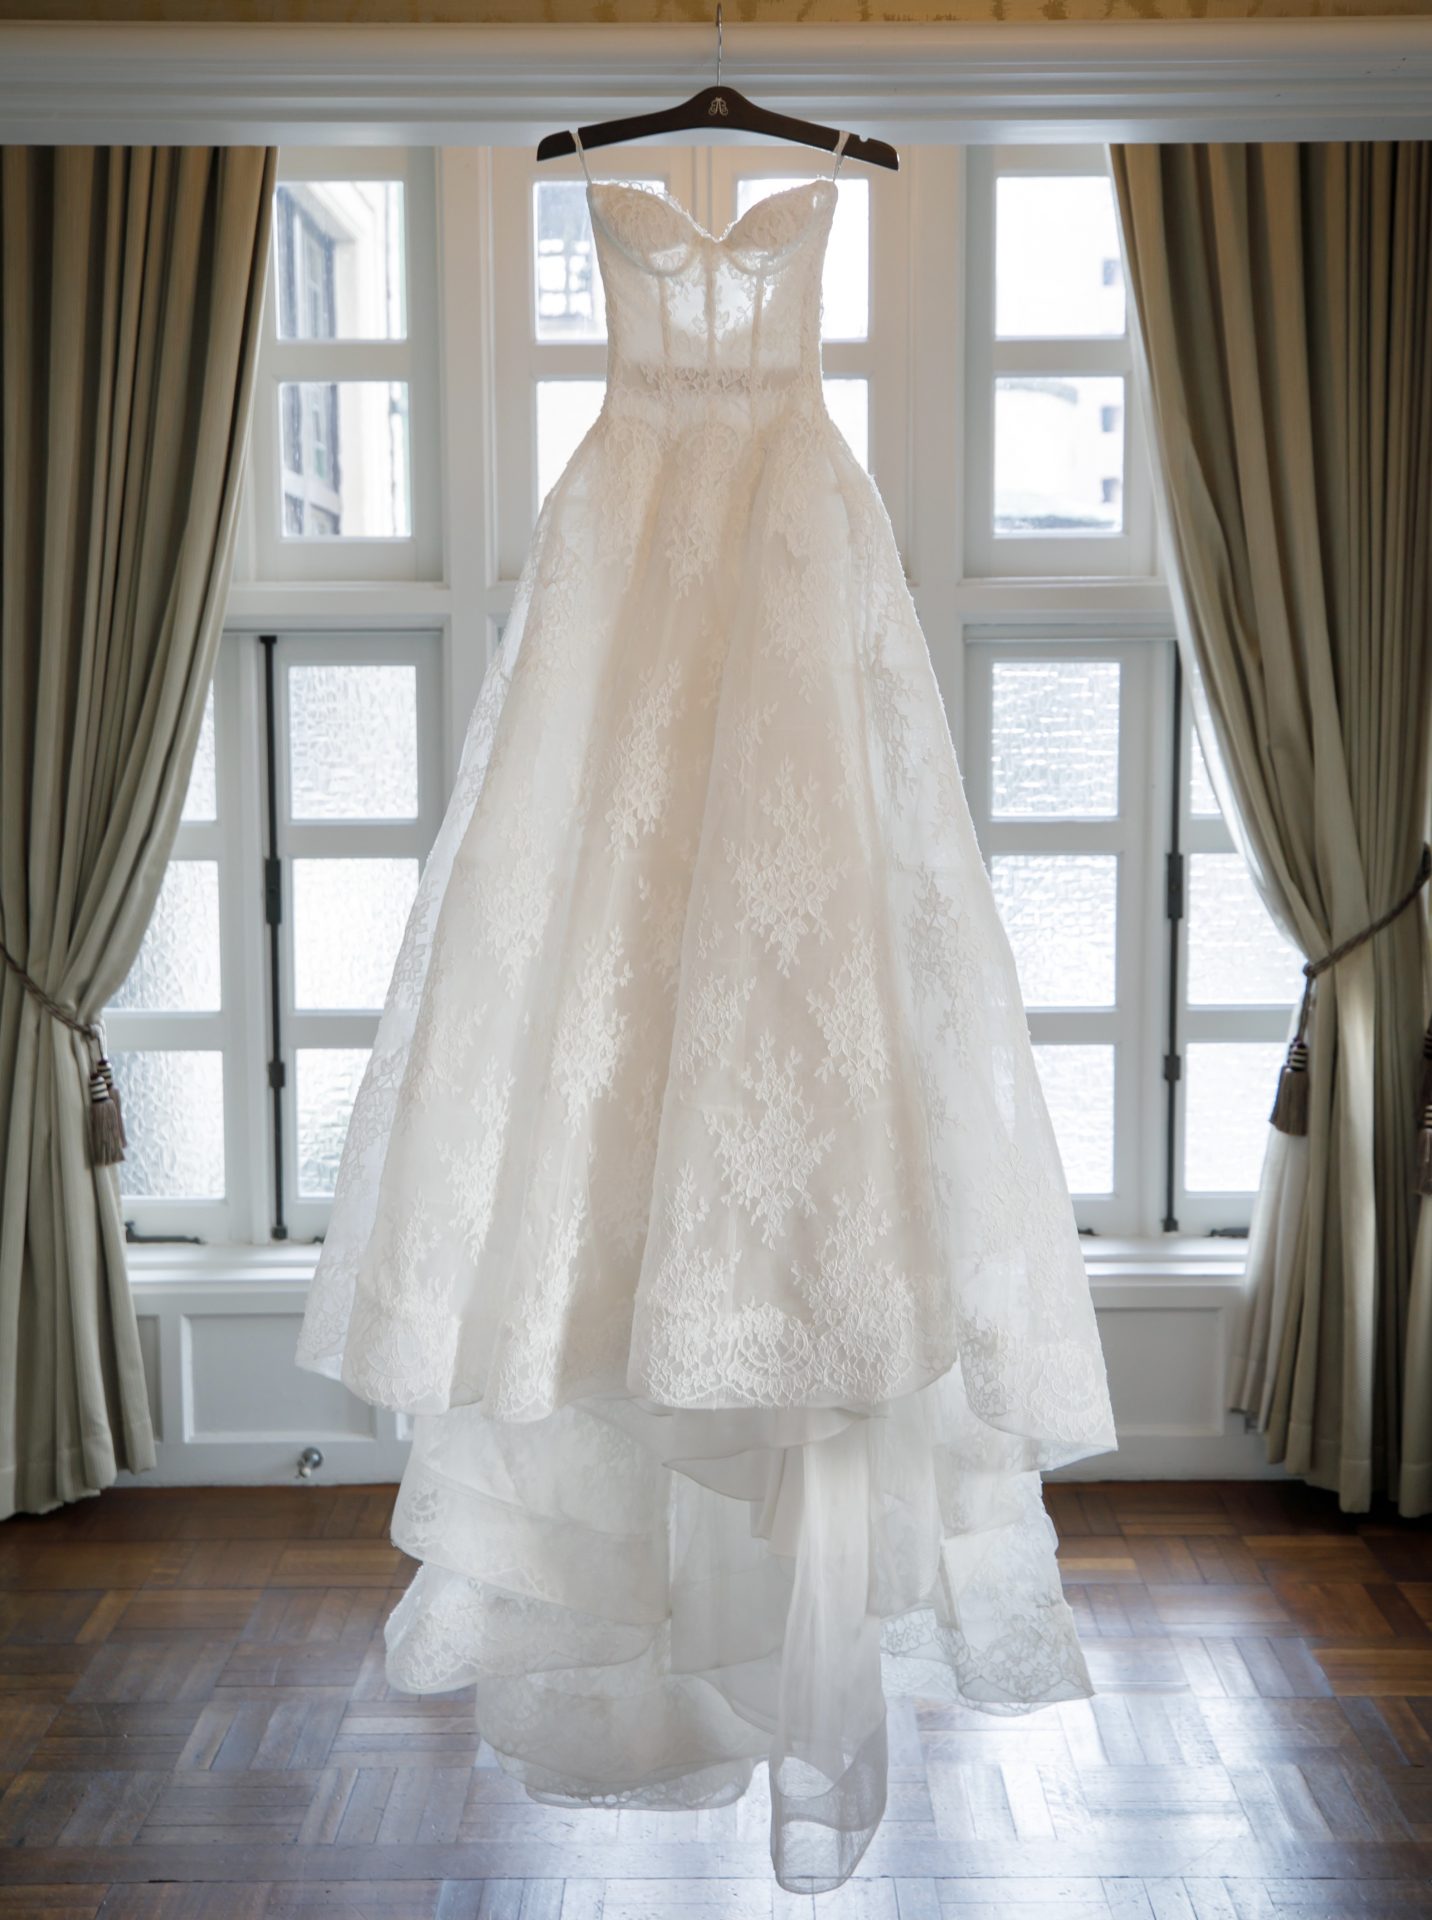 アメリカロサンゼルス発のブランド、モニークルイリエのウェディングドレスはお洒落な大人花嫁にも愛される繊細なレースが特徴のブランドです